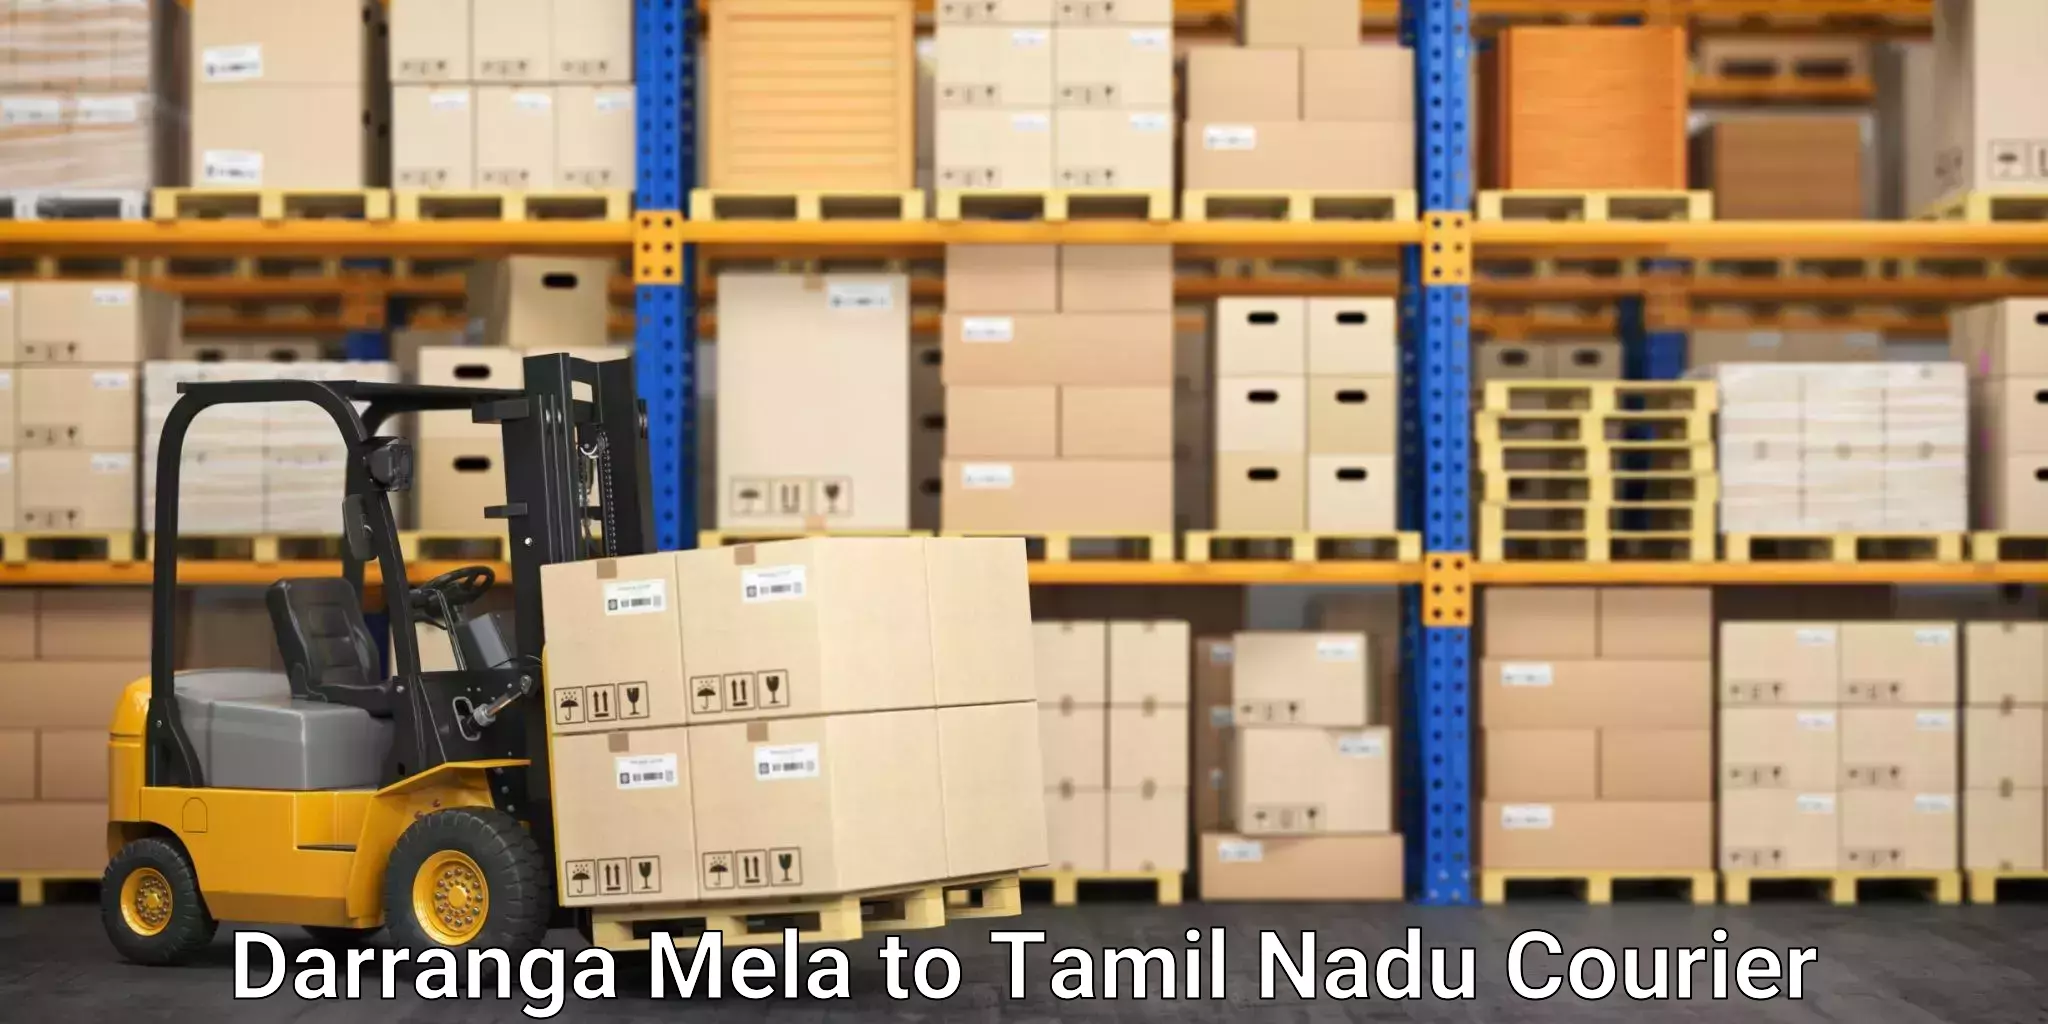 Comprehensive freight services Darranga Mela to Vedasandur